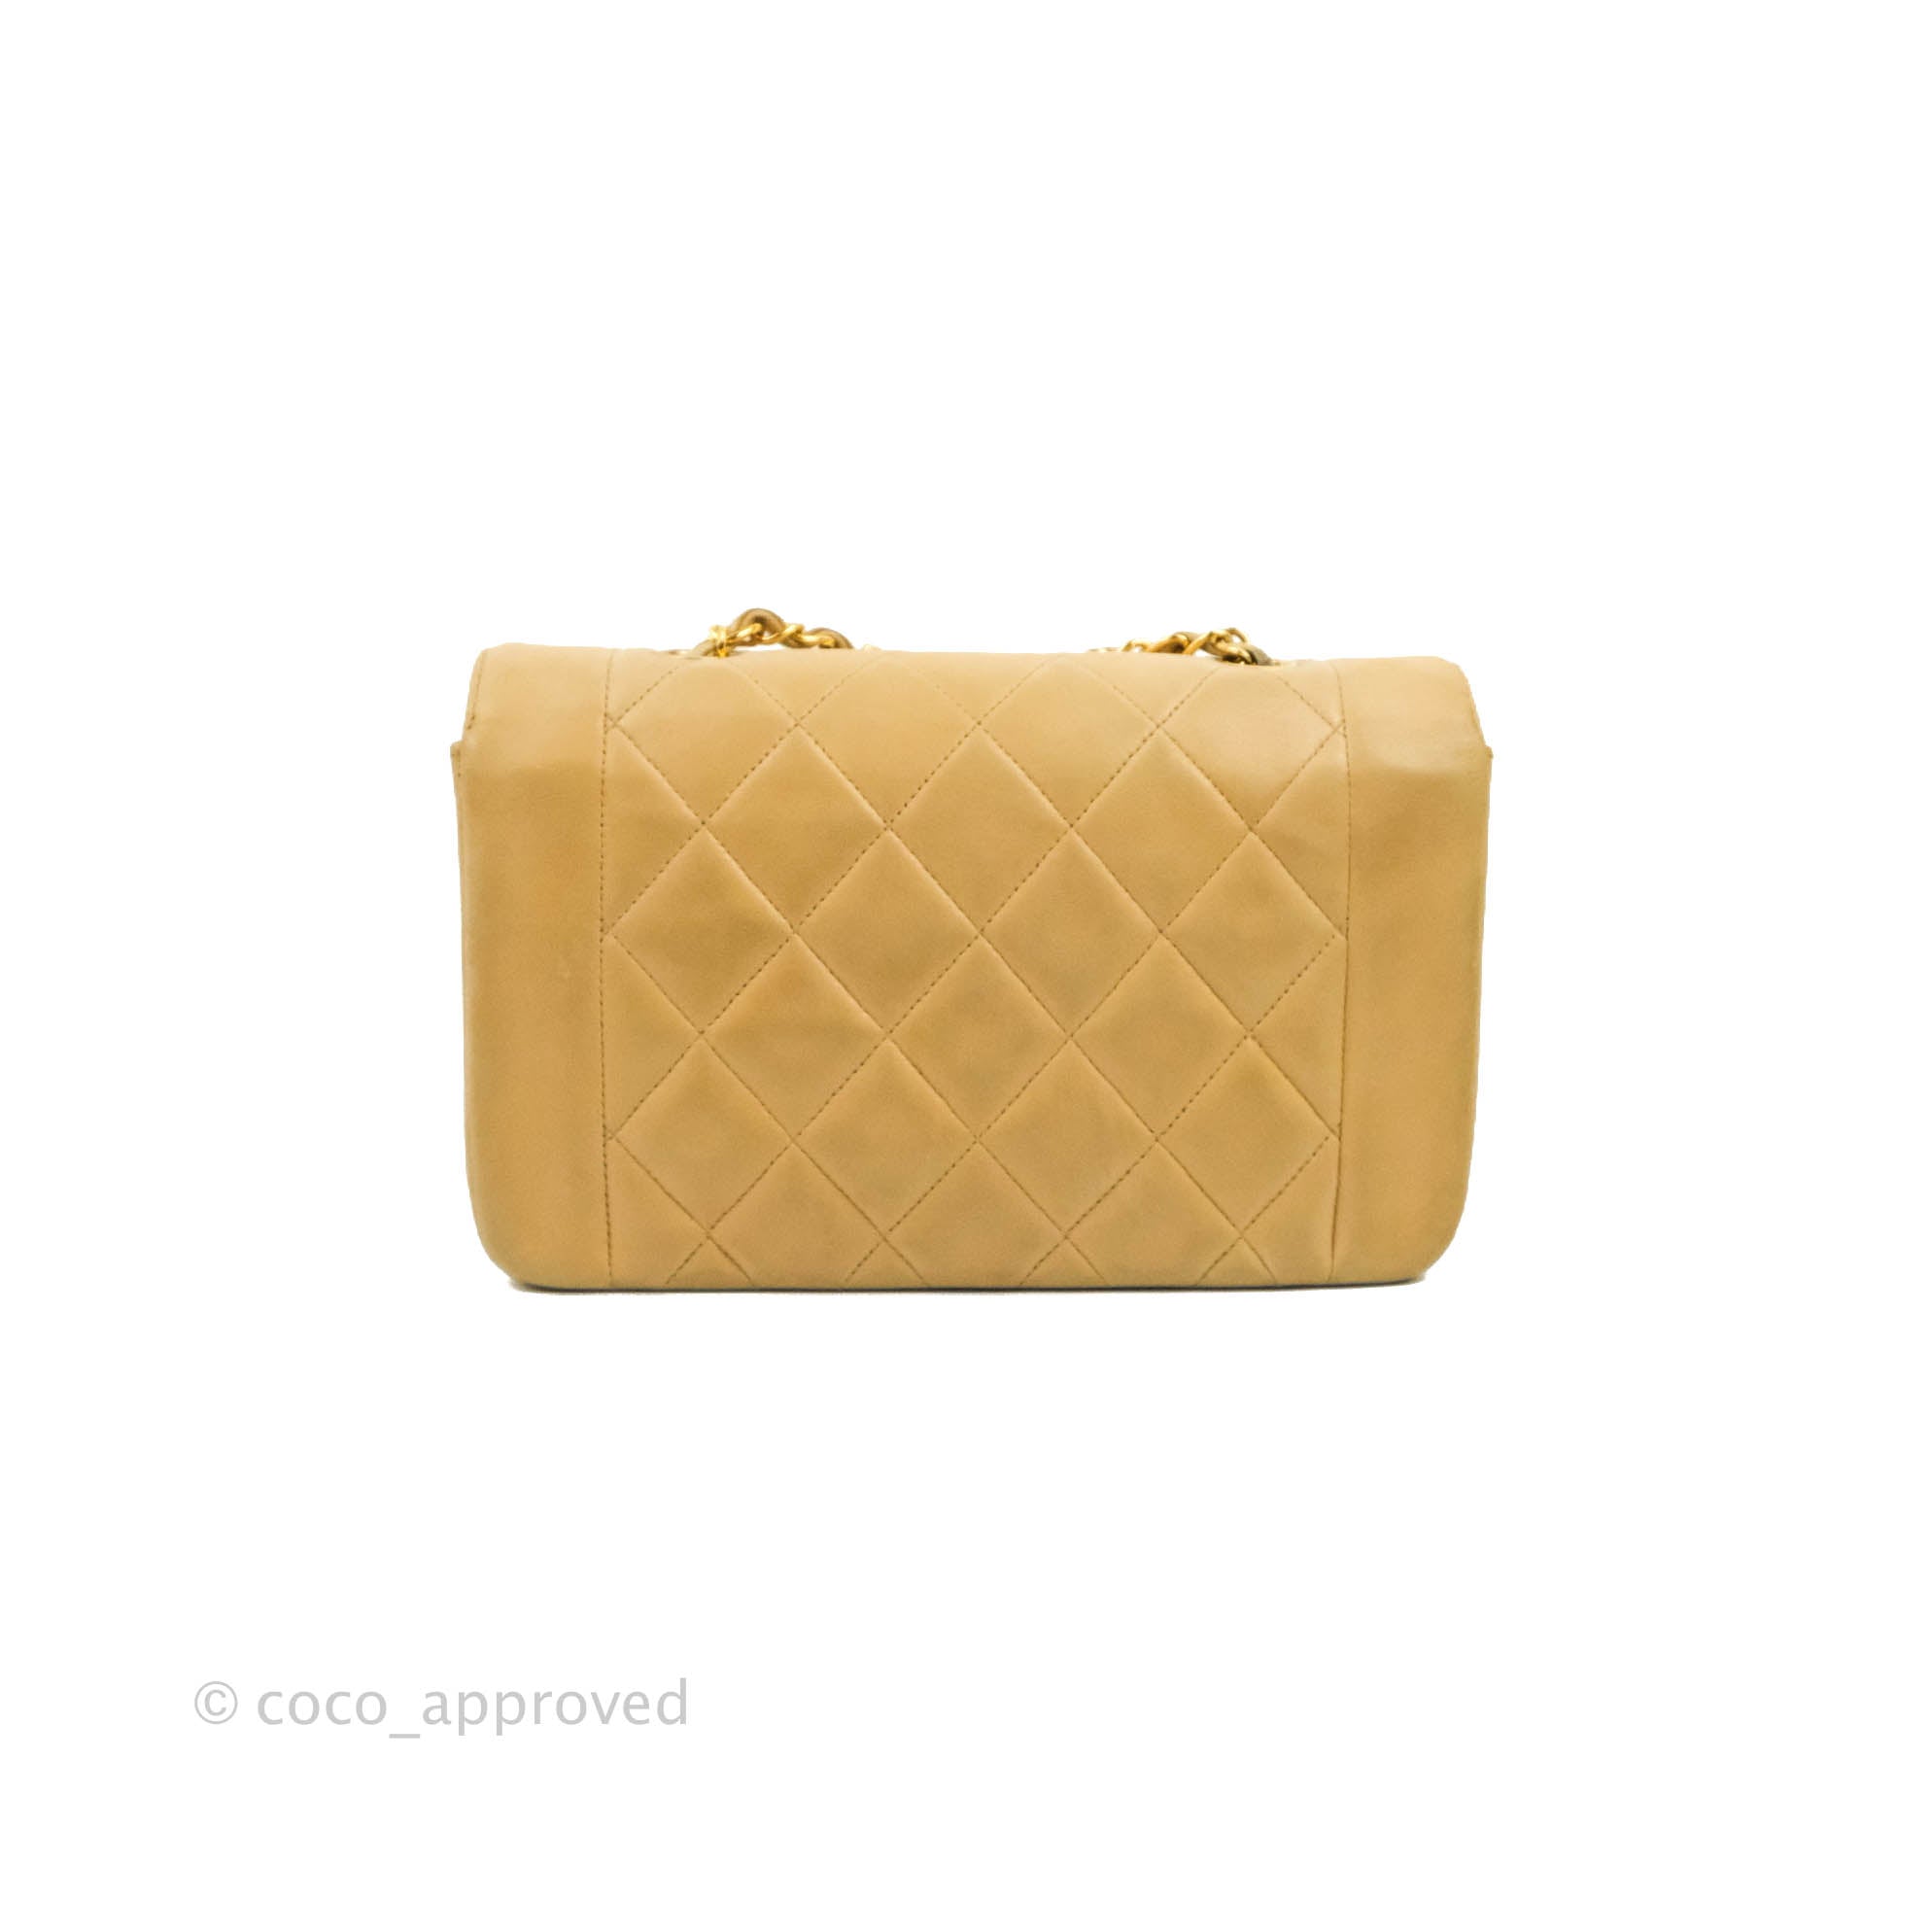 Sold at Auction: Chanel Vintage Orange Quilted Suede Shoulder Bag.